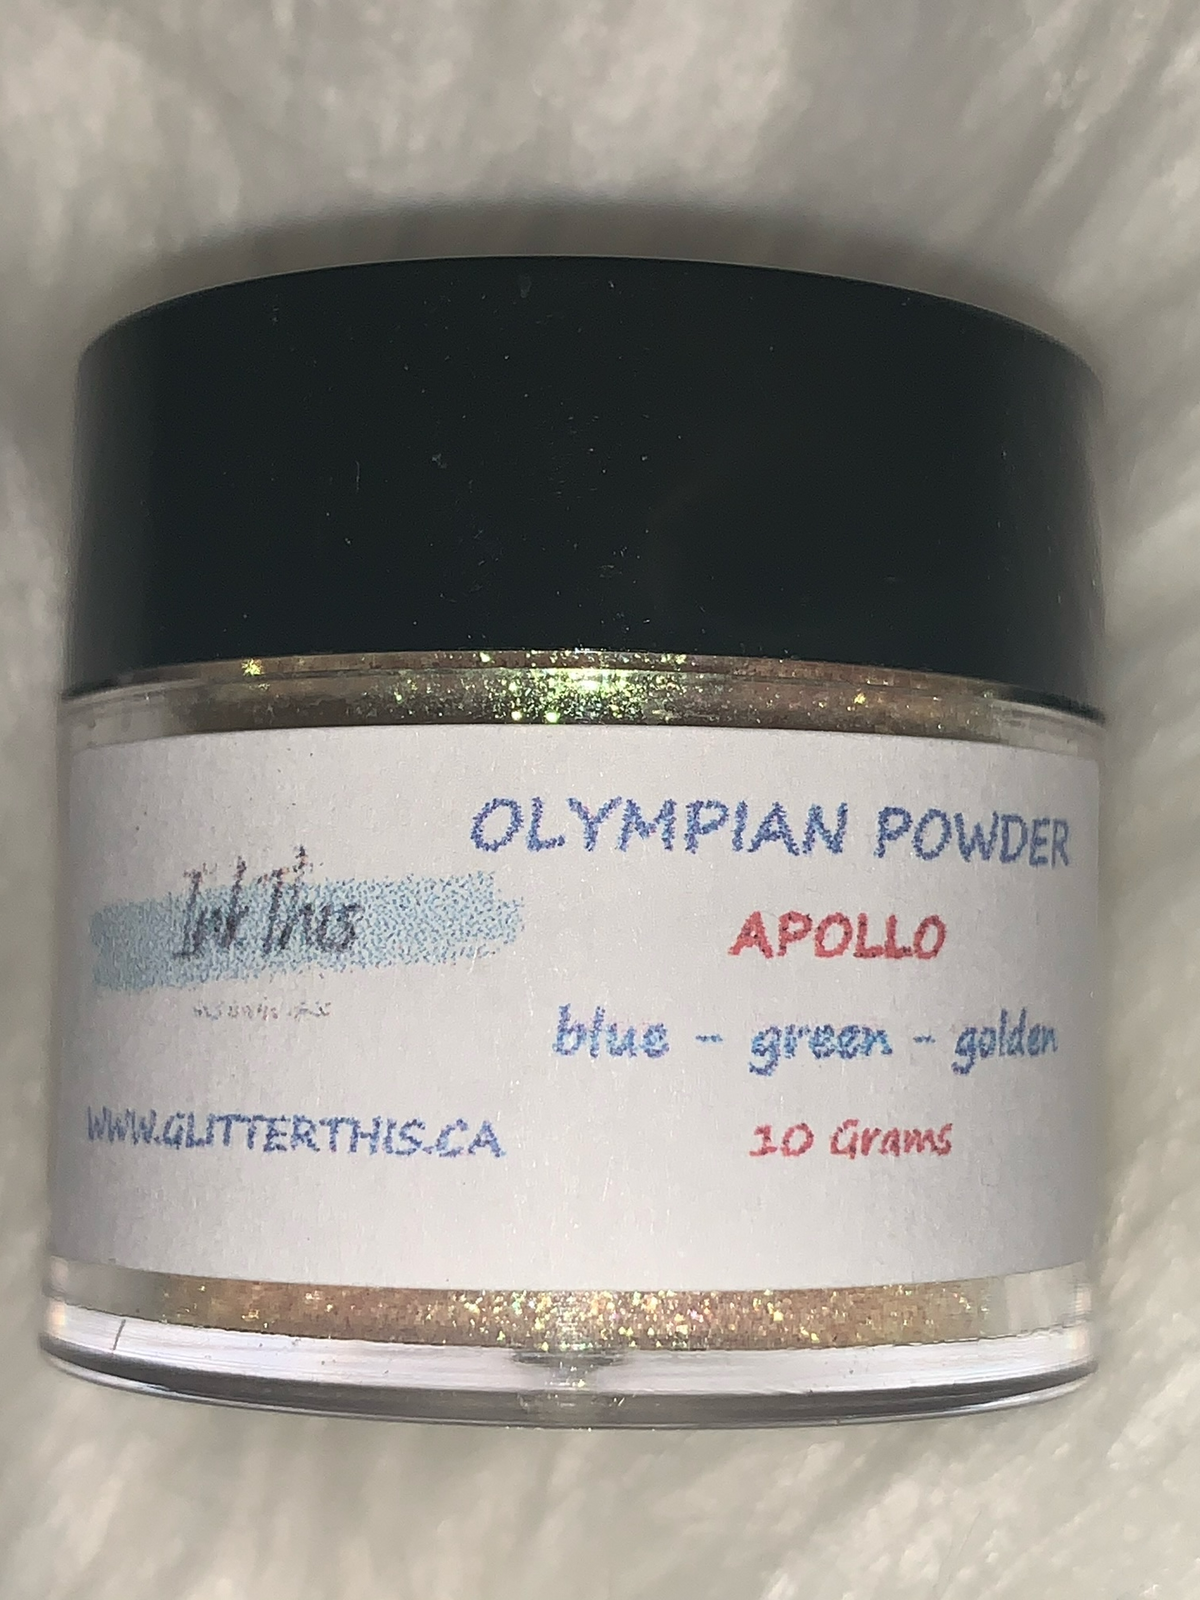 Apollo - Chameleon Powder